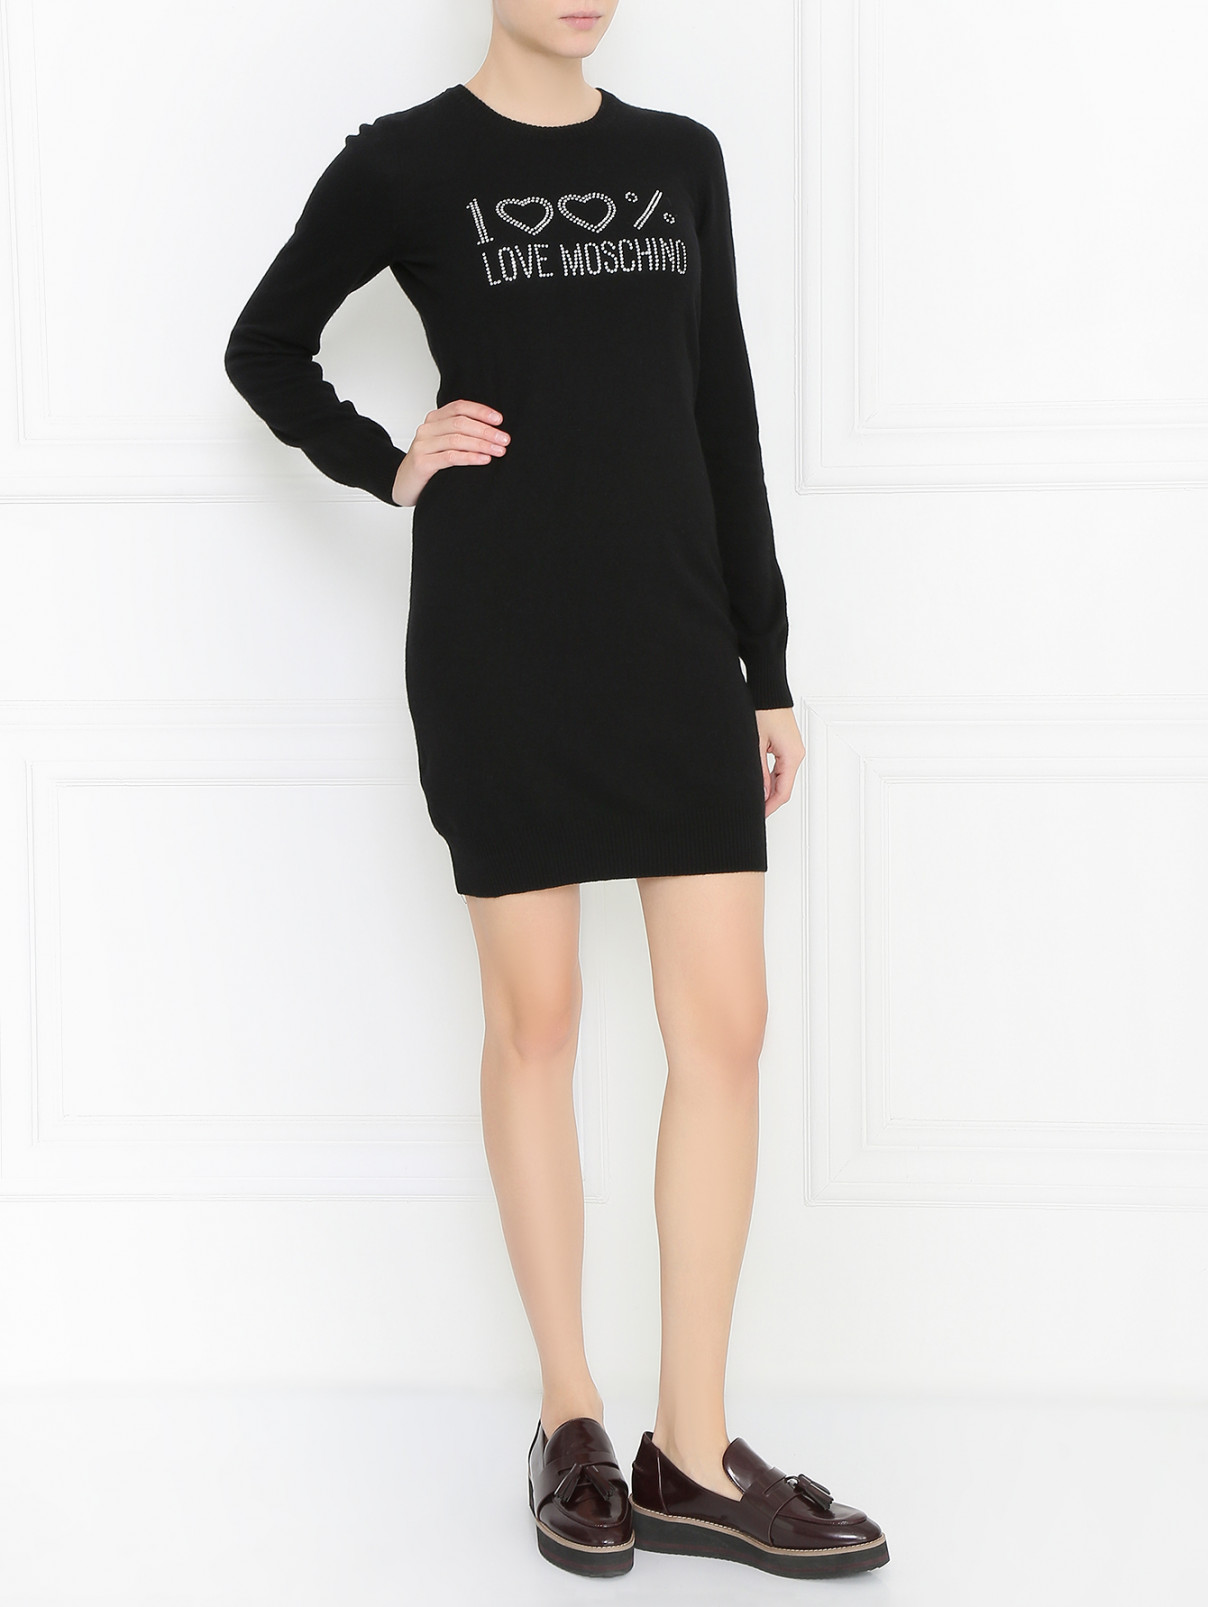 Платье из шерсти декорированное стразами Moschino Love  –  Модель Общий вид  – Цвет:  Черный